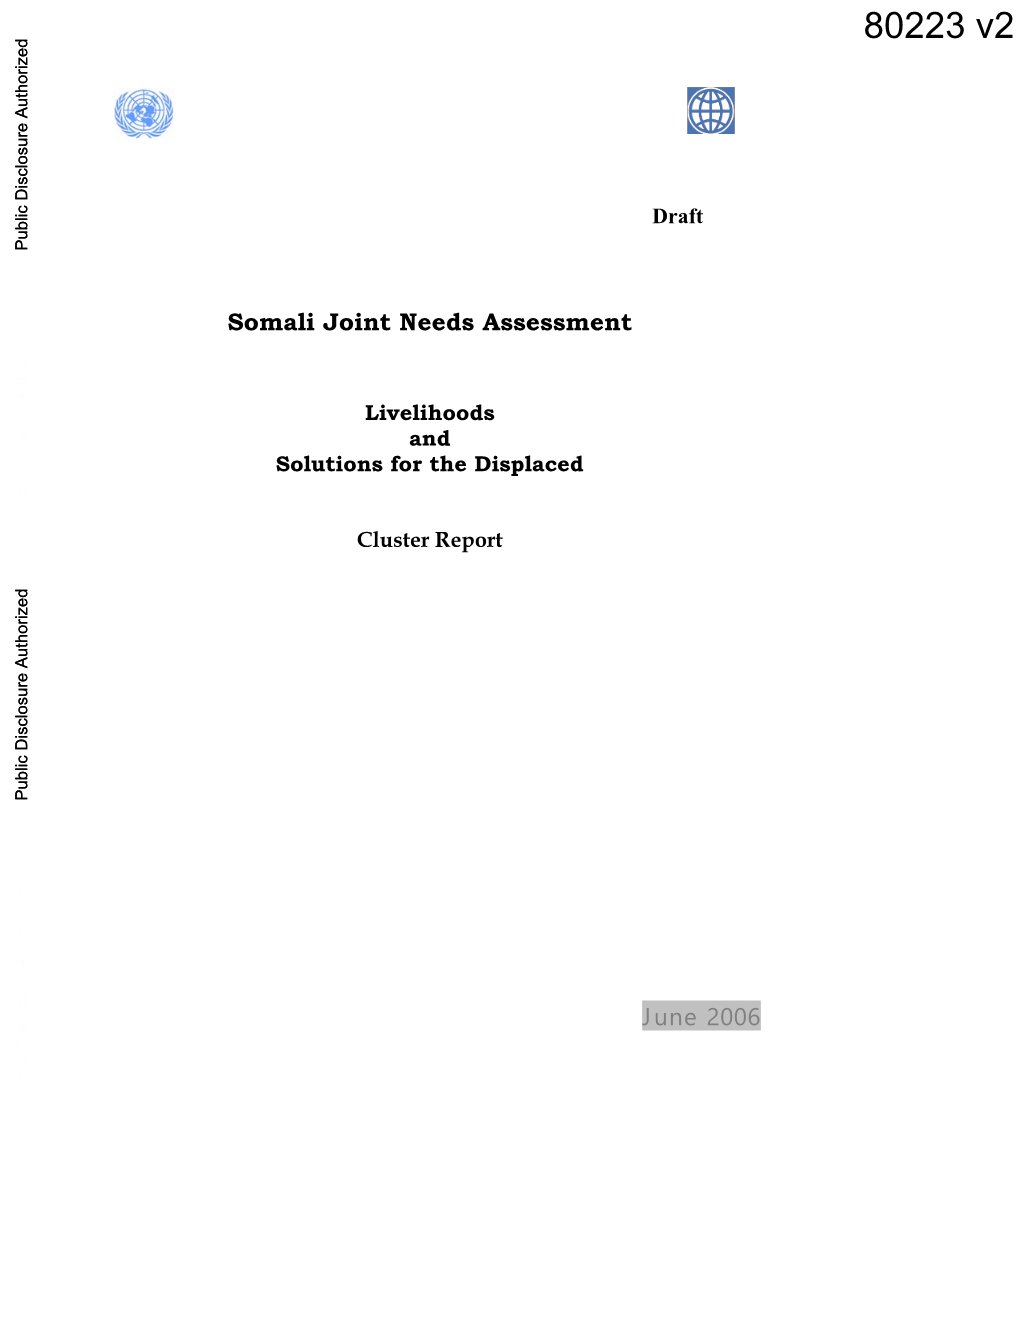 Somali Joint Needs Assessment